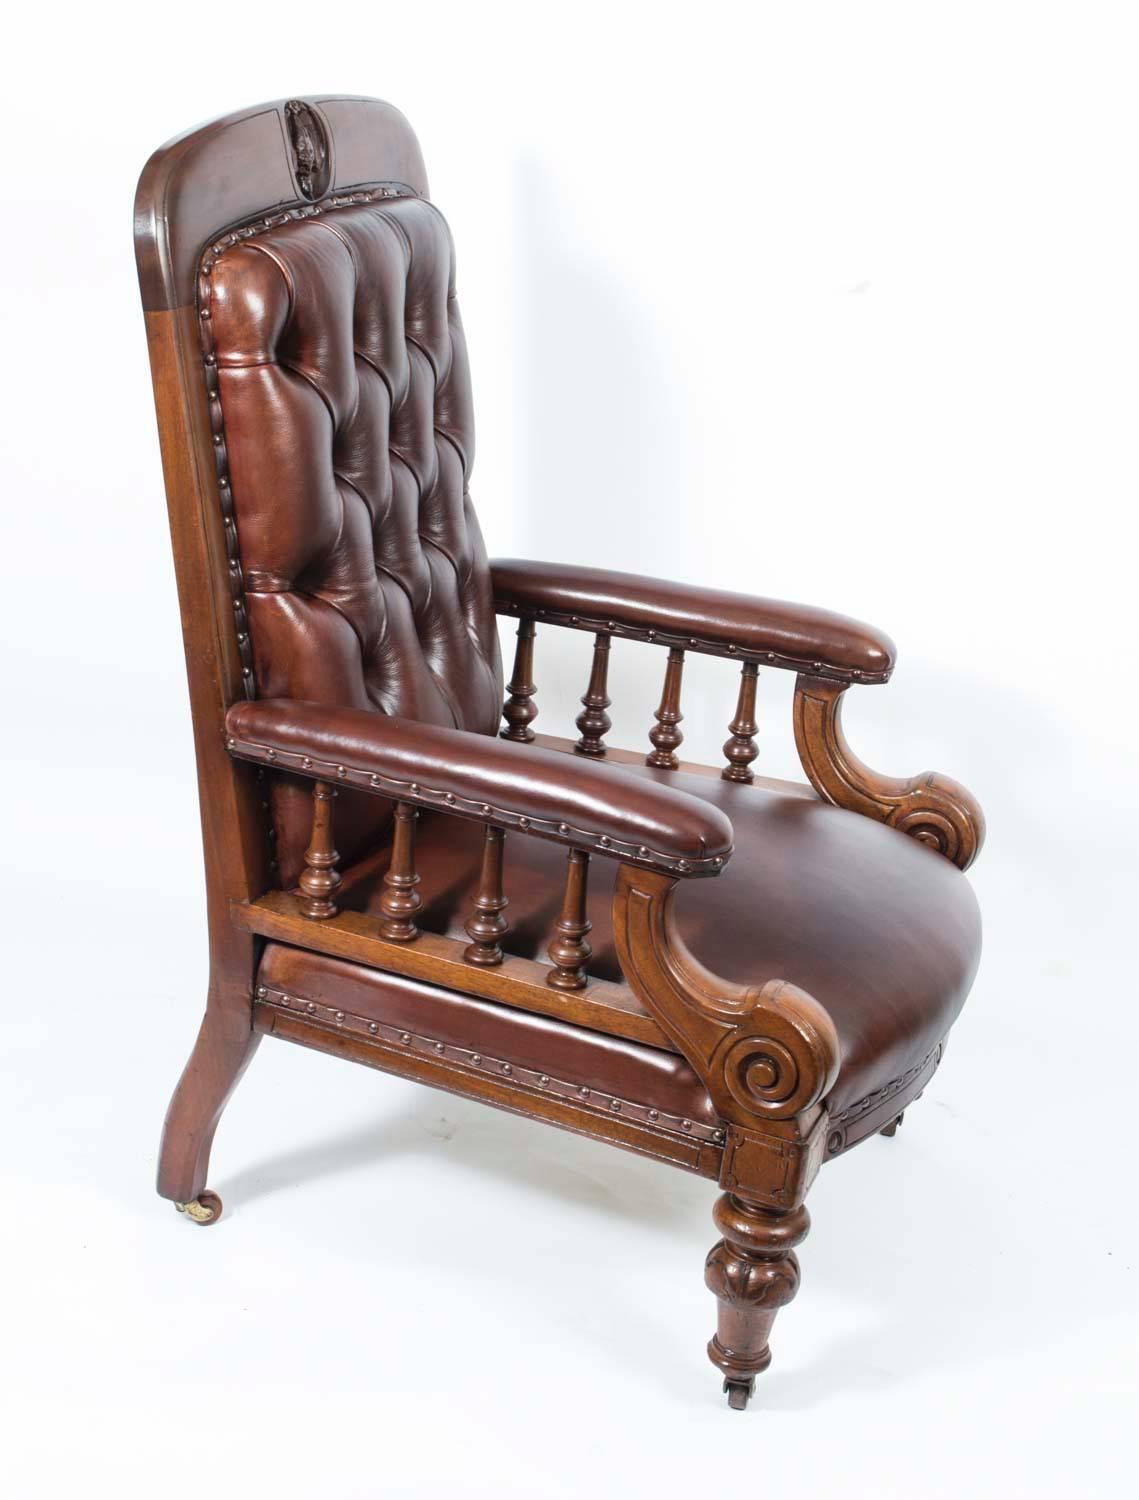 Il s'agit d'une belle paire d'anciens fauteuils club victoriens en acajou et cuir, datant d'environ 1880.

Cette belle paire a été fabriquée à partir d'acajou massif sculpté à la main de façon magistrale, avec une intéressante crête d'oiseau